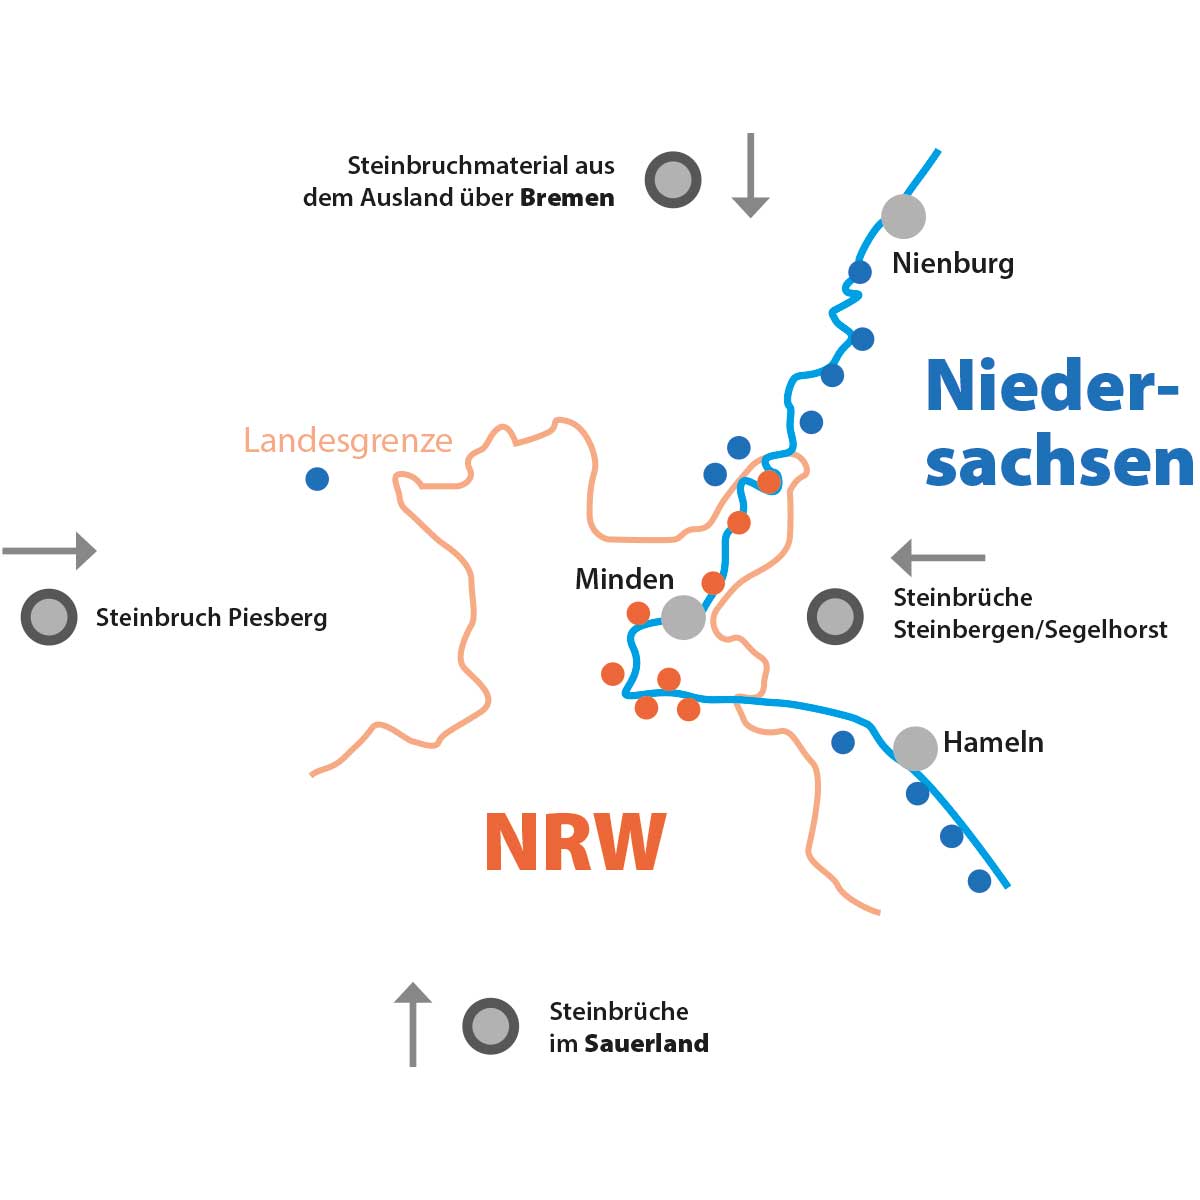 Die Karte verdeutlicht die besondere Situation an der Weser. Kieswerke in NRW liegen nur wenige Kilometer von Kieswerken in Niedersachsen entfernt.